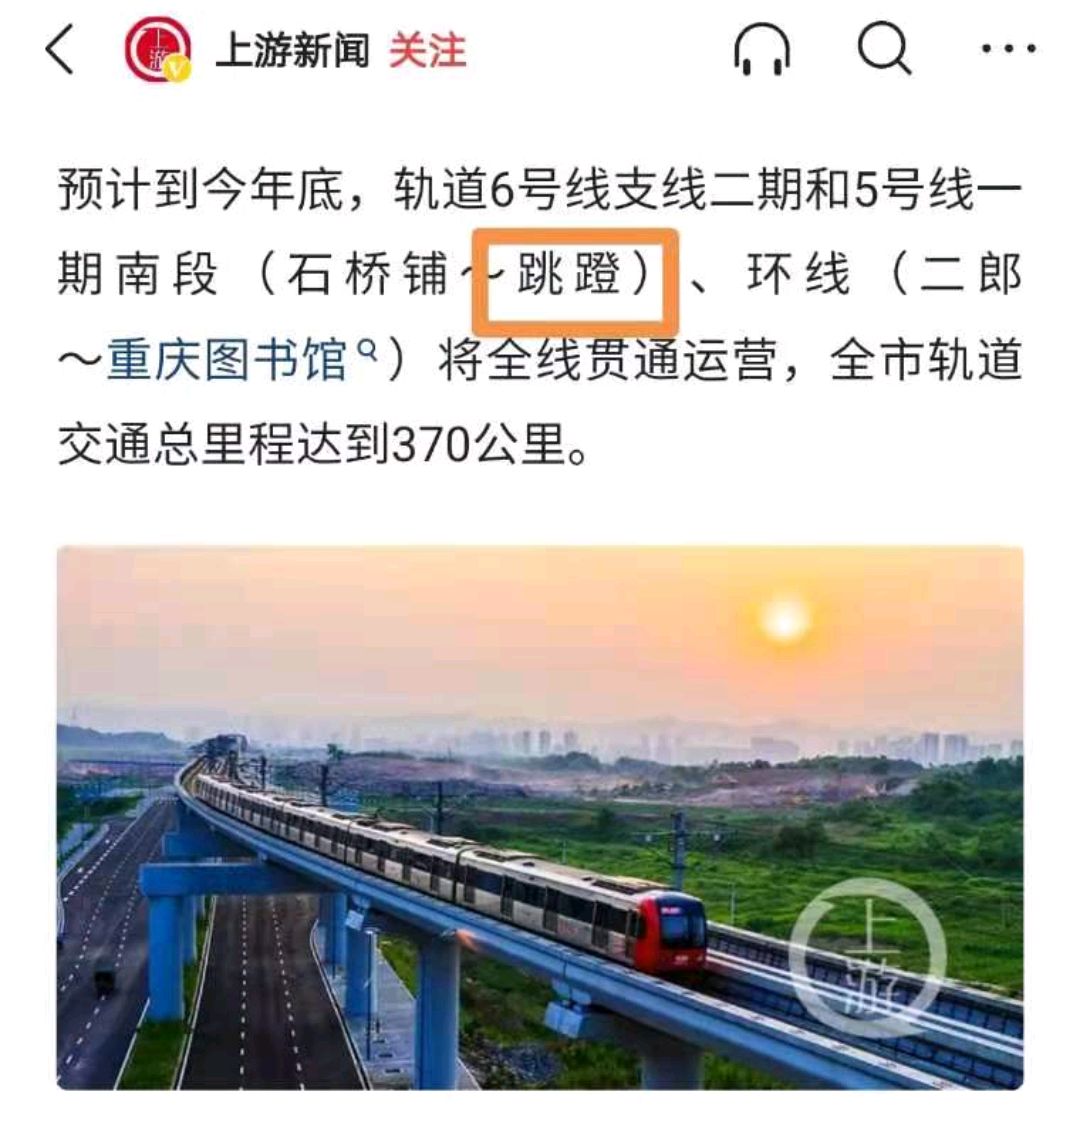 重庆轨道交通5号线跳deng站到底是蹬还是磴?